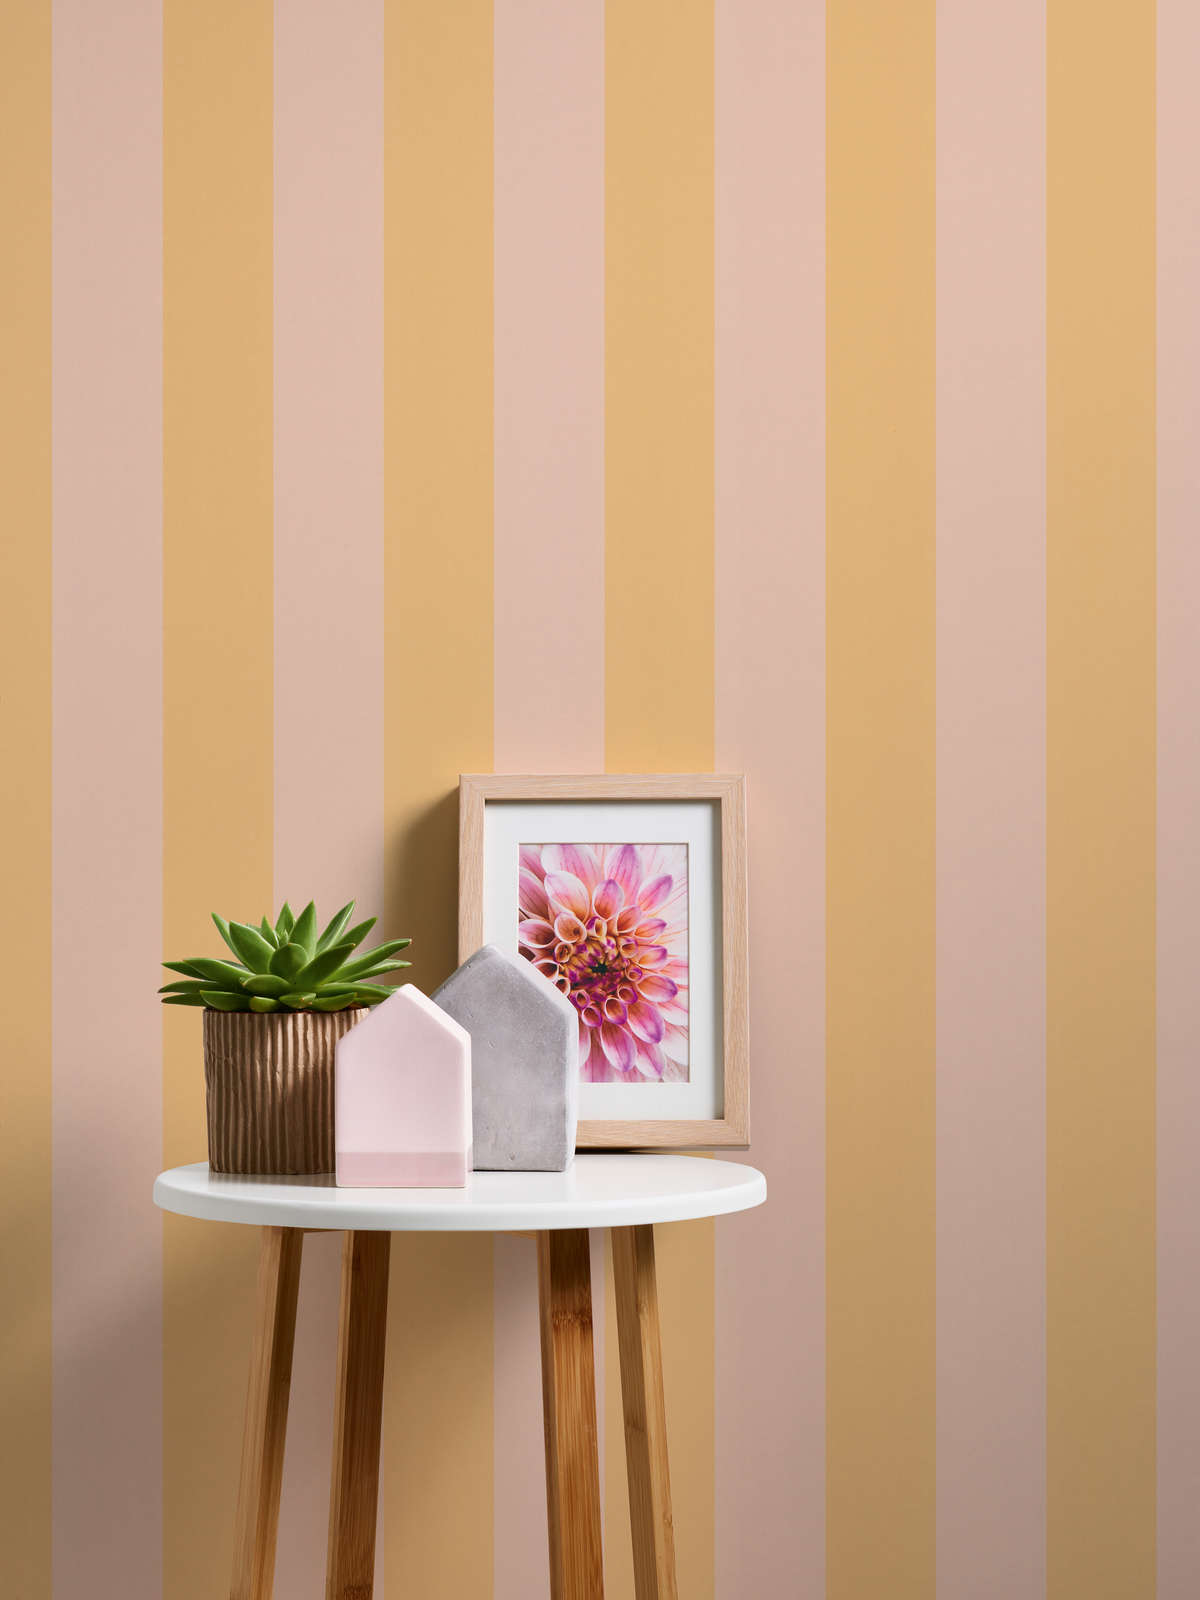             Papier peint intissé avec rayures en bloc dans des tons doux - orange, rose
        